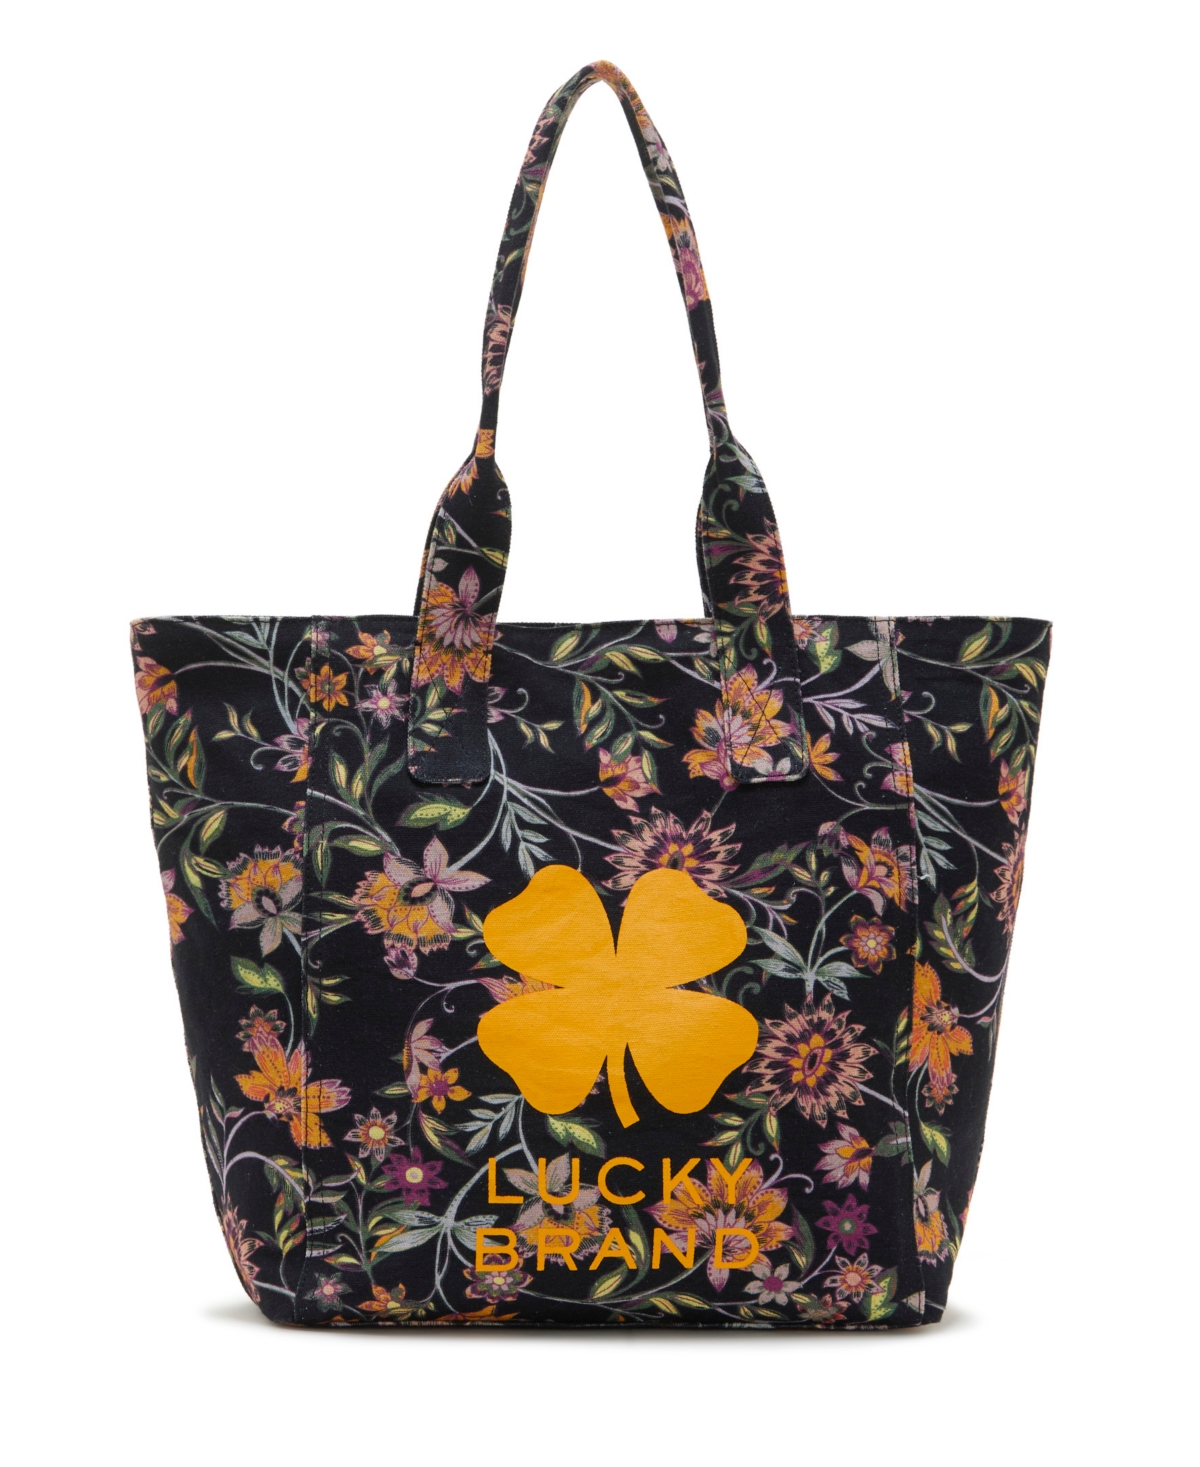 Lucky Brand Women's Lona Tote Handbag In Black Multi